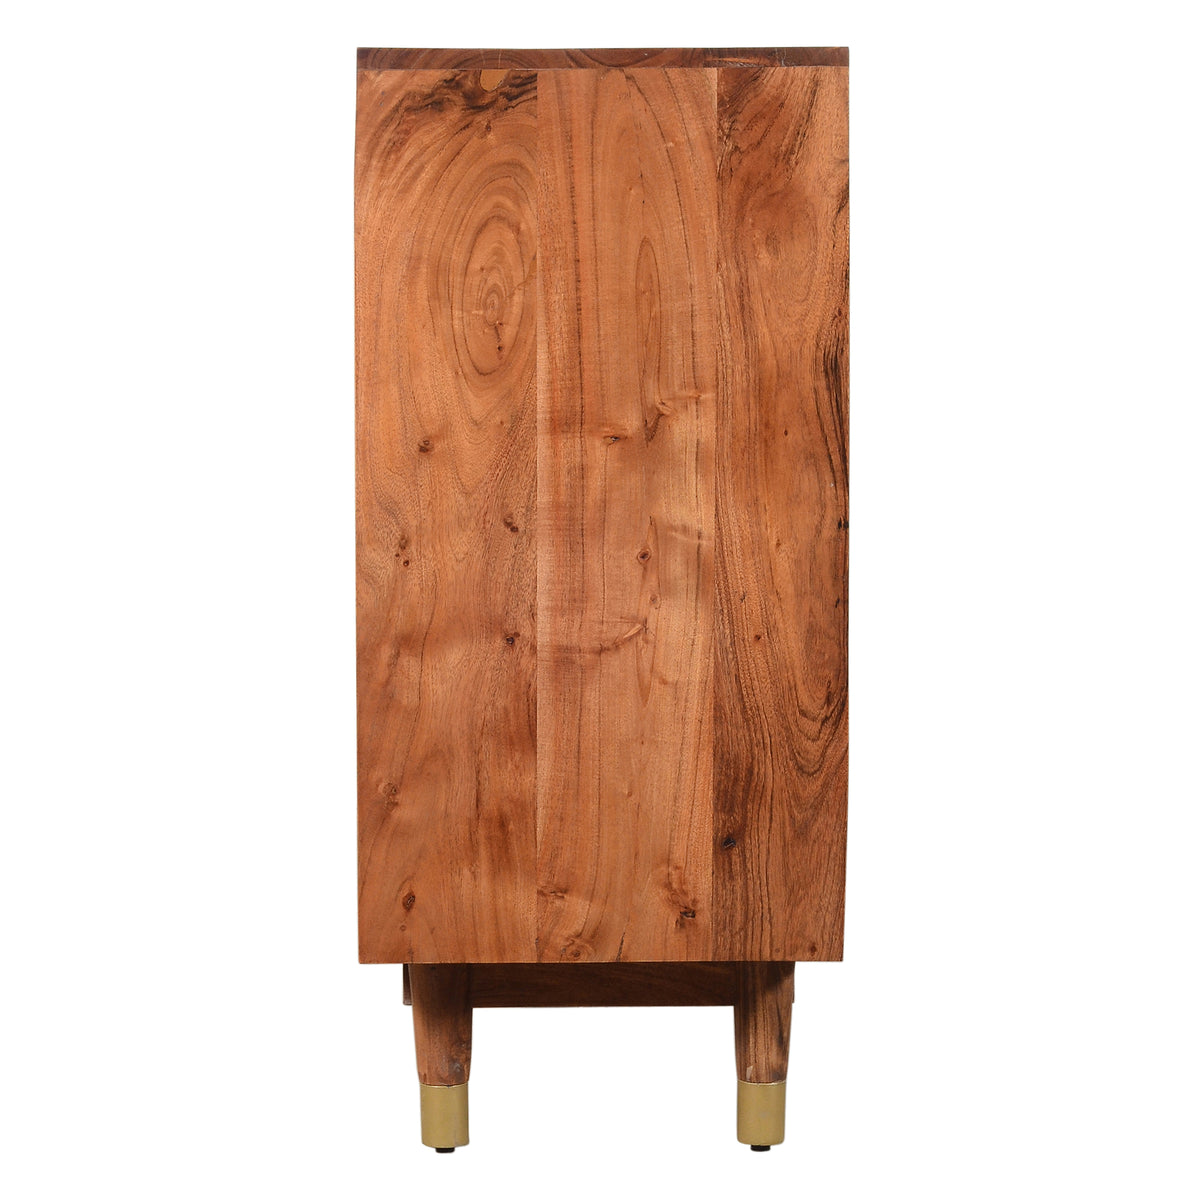 Handcrafted Wooden Sideboard with Shutter Design Door Storage, Rustic Brown - UPT-197865